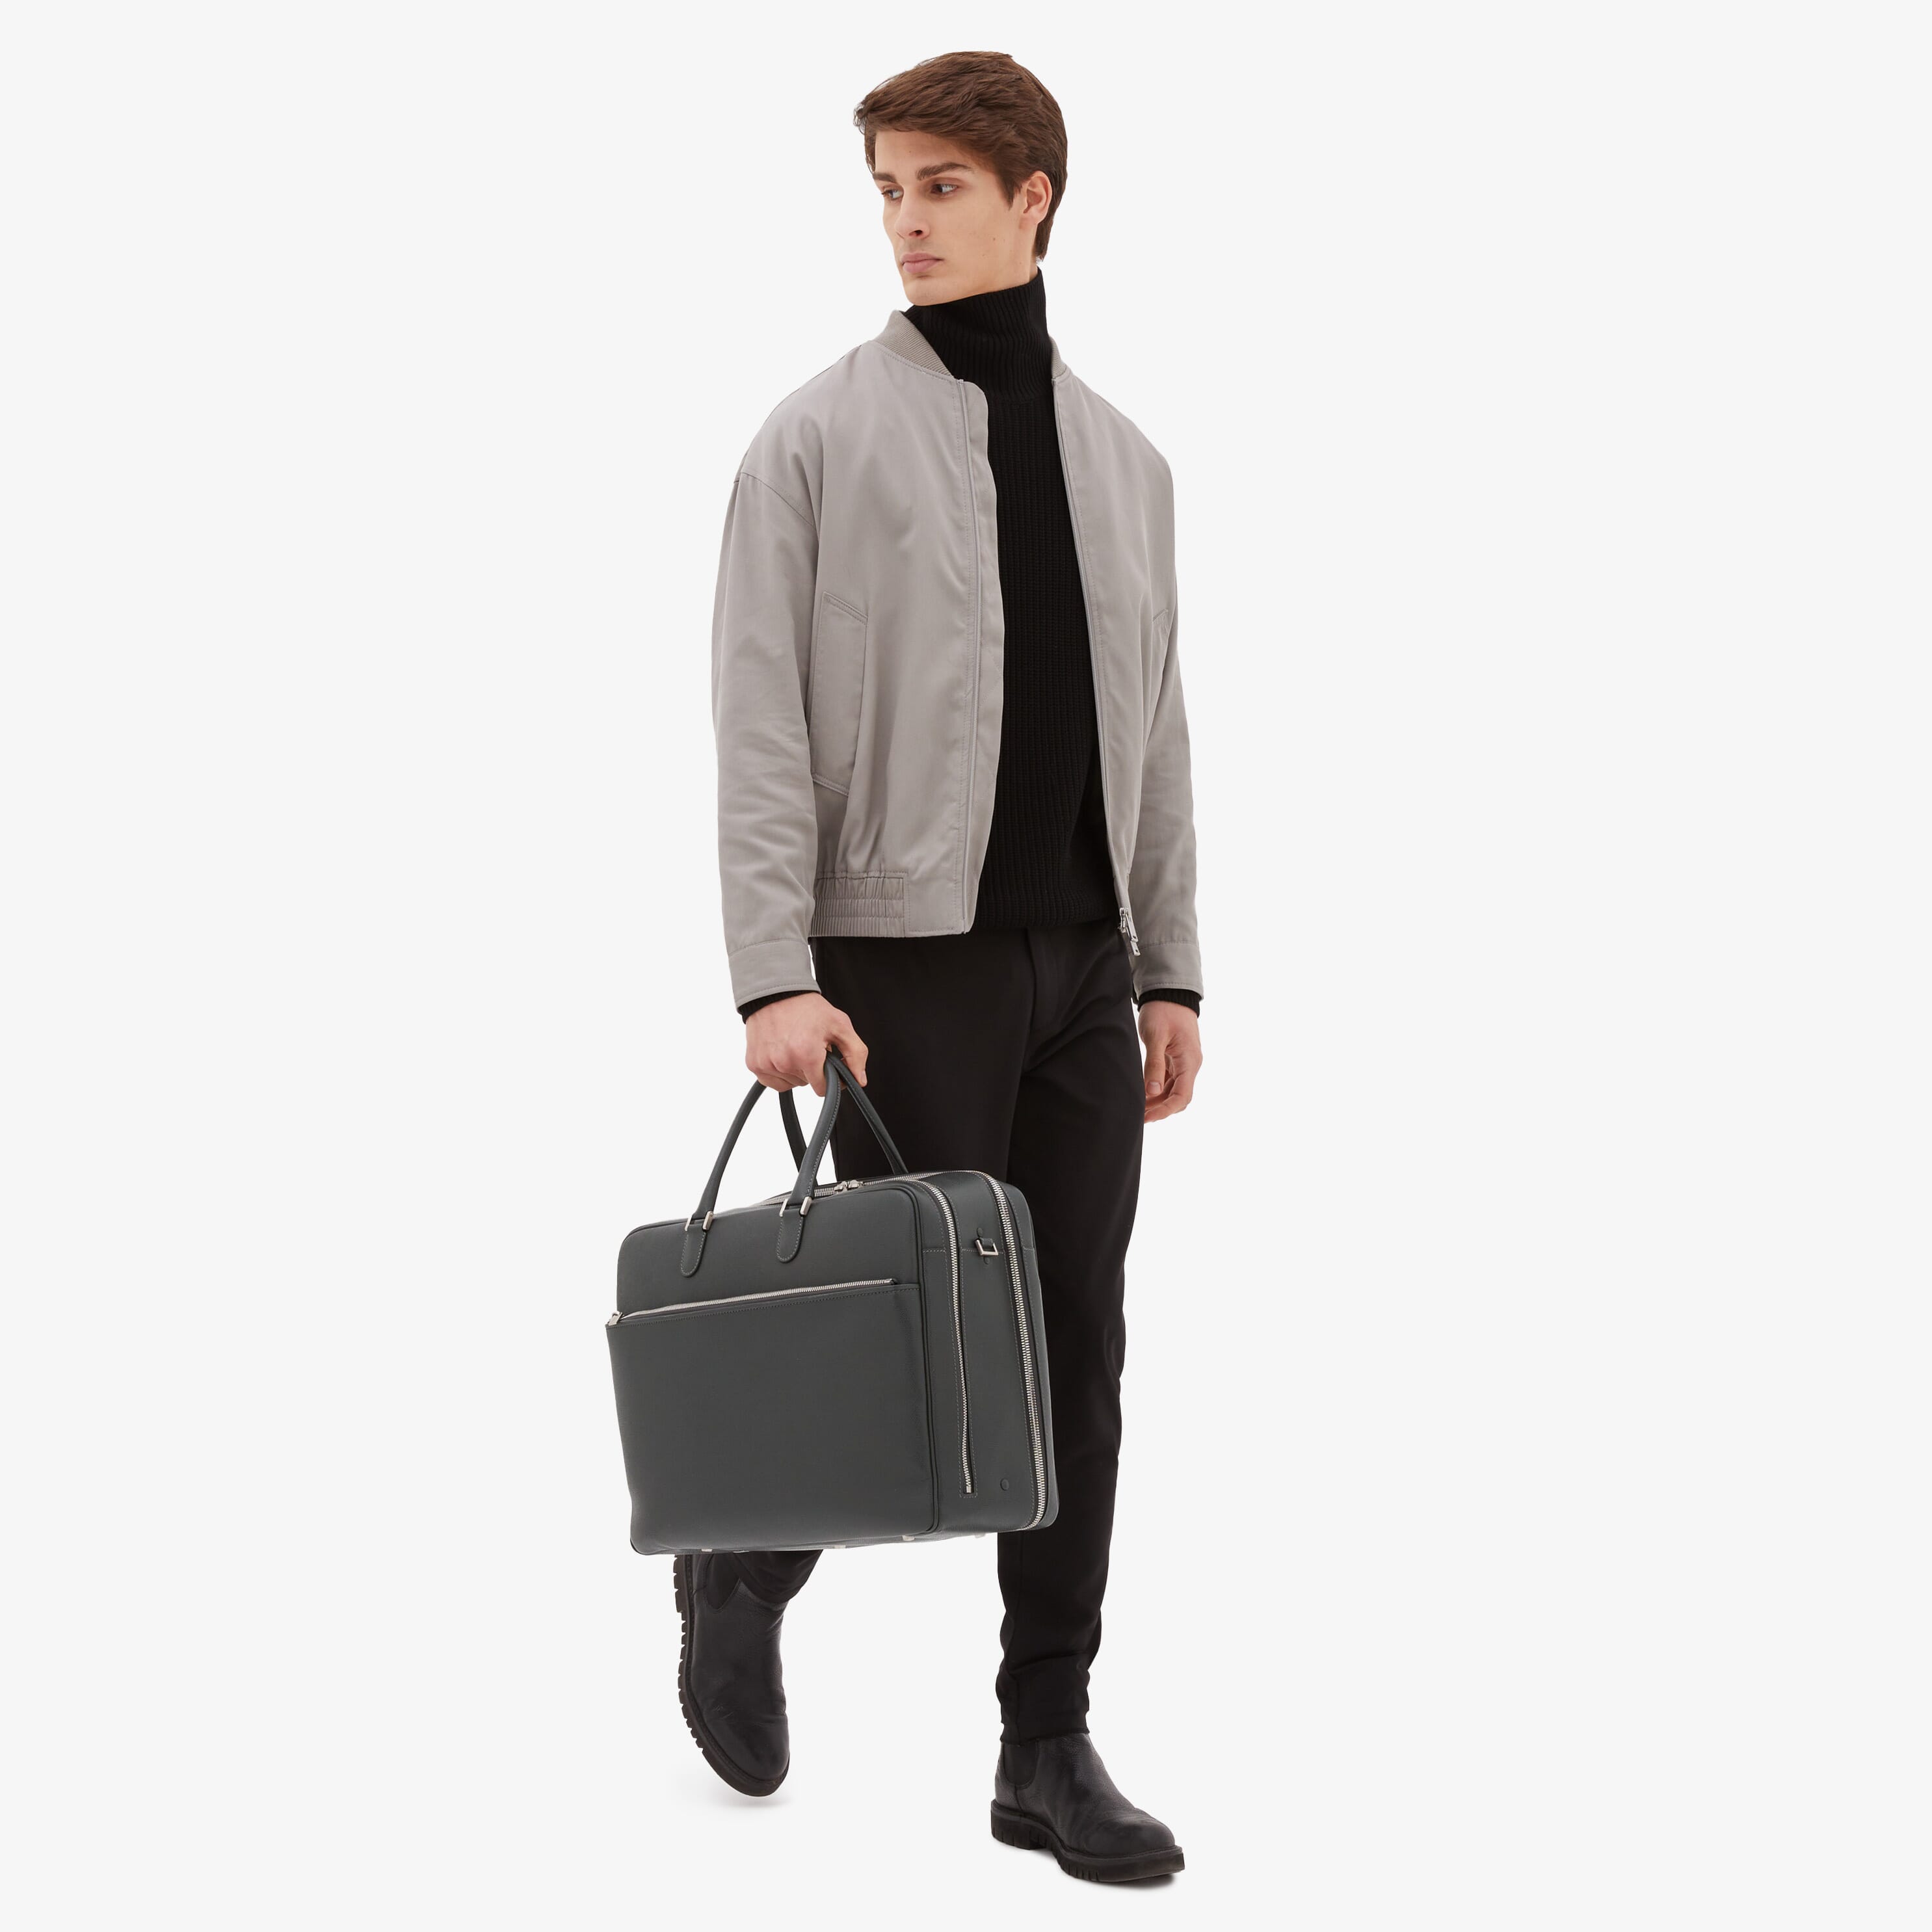 Soft Avietta Travel Bag - Smokey Grey - Vitello VS - Valextra - 2